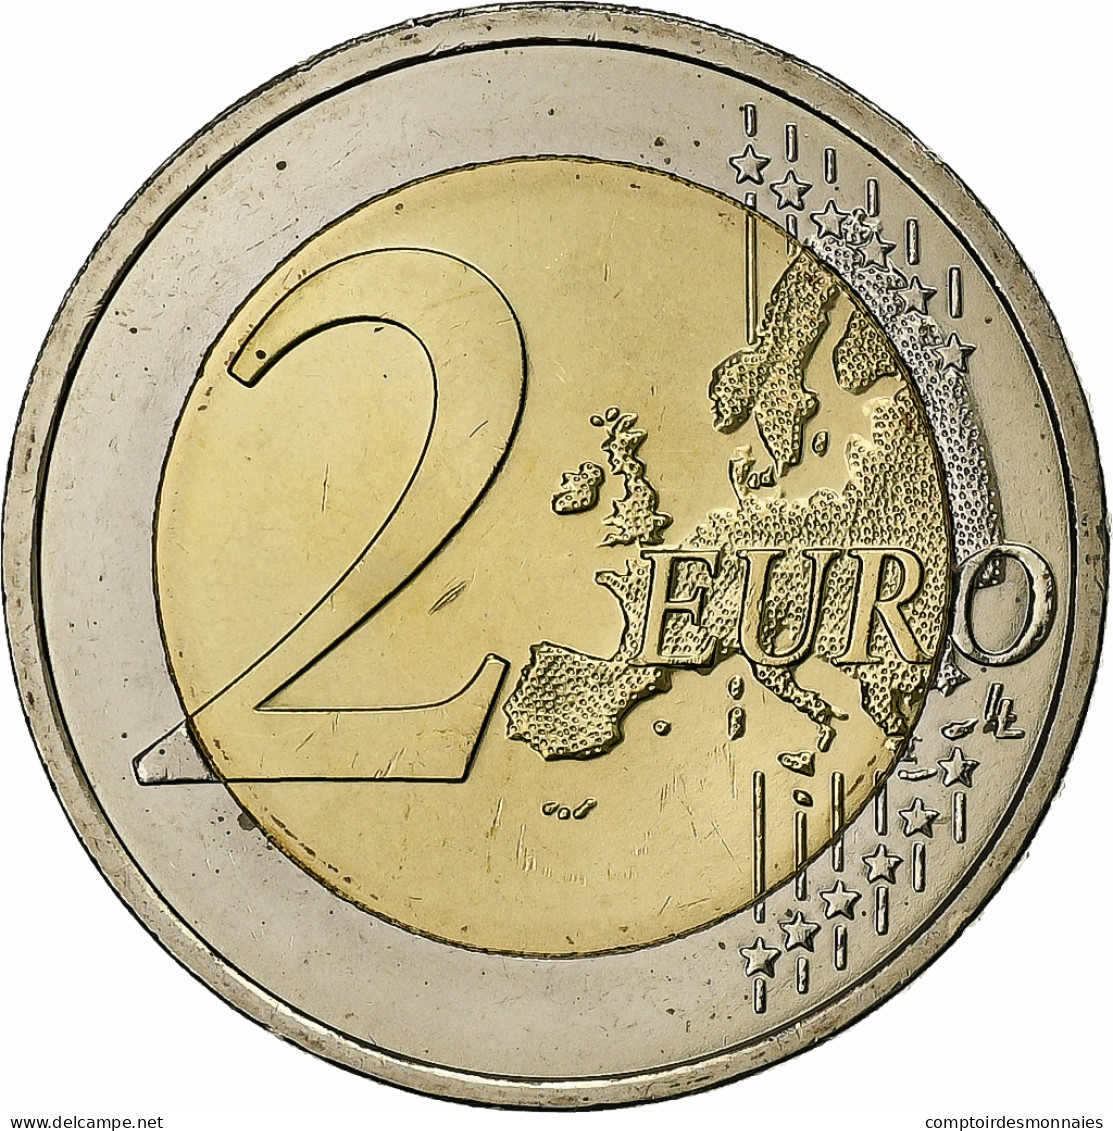 Autriche, 2 Euro, 2015, Vienne, Bimétallique, SPL+, KM:3205 - Autriche